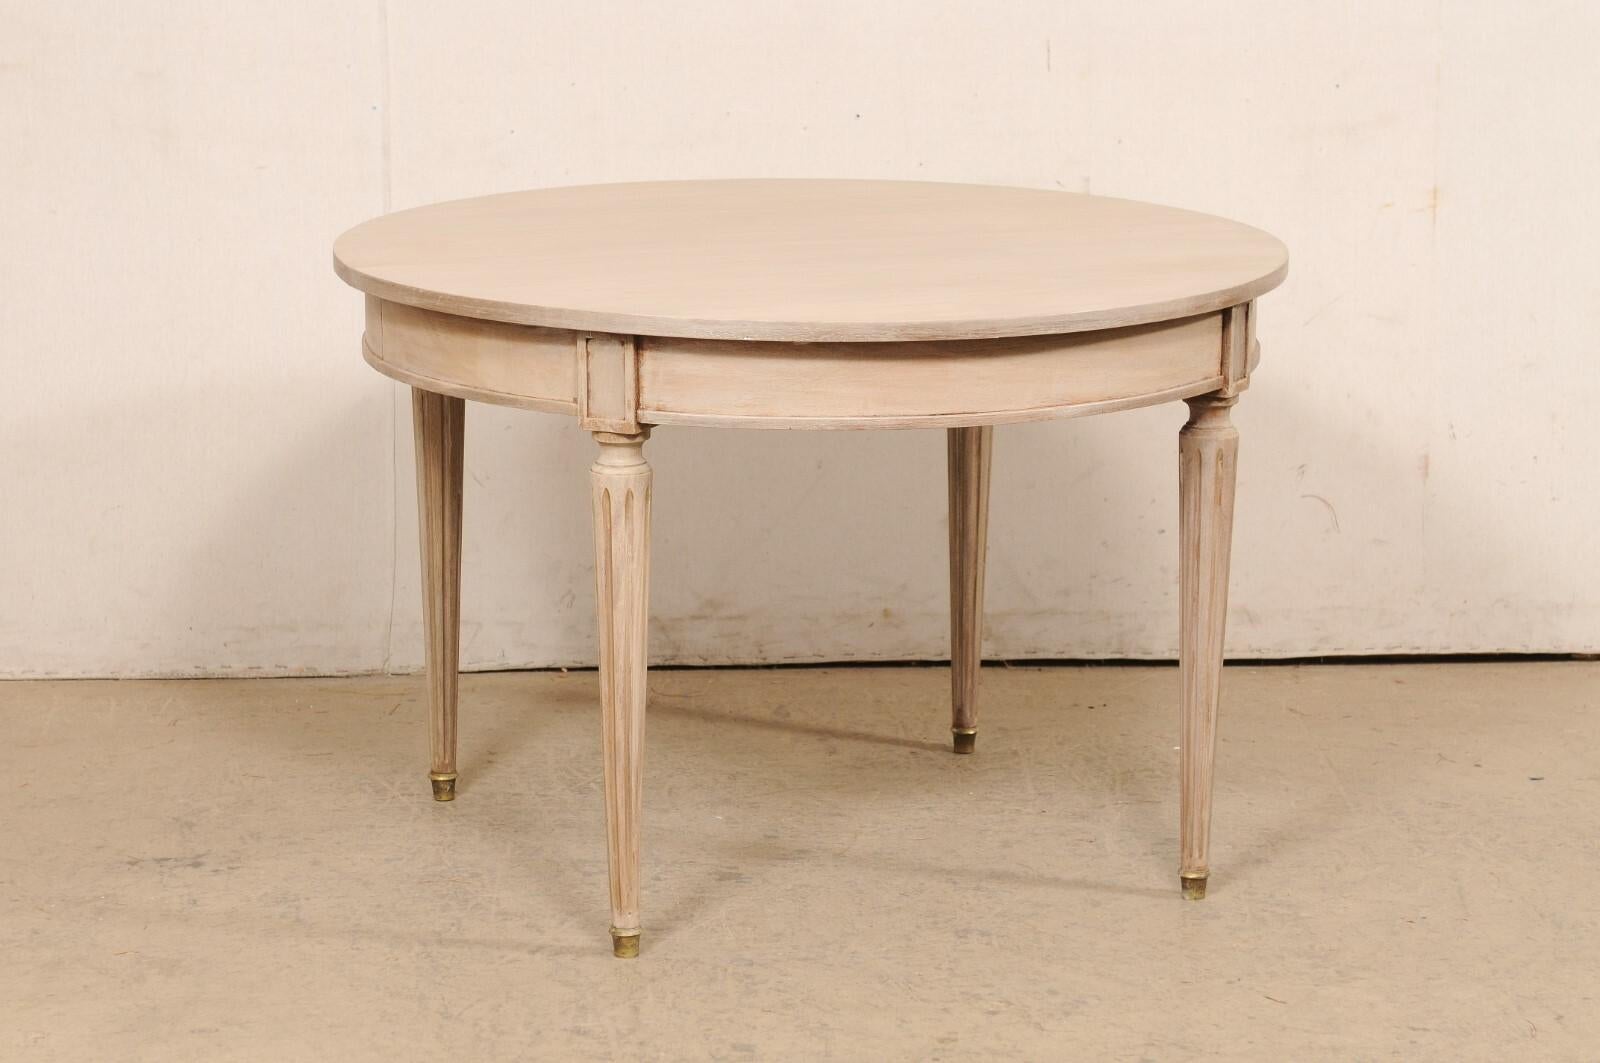 Ein französischer bemalter Holztisch aus der Mitte des 20. Jahrhunderts. Dieser Vintage-Tisch aus Frankreich hat eine kreisförmige Platte, die leicht über die abgerundete Schürze darunter hinausragt, einen sauber geformten Sockel und gerahmte